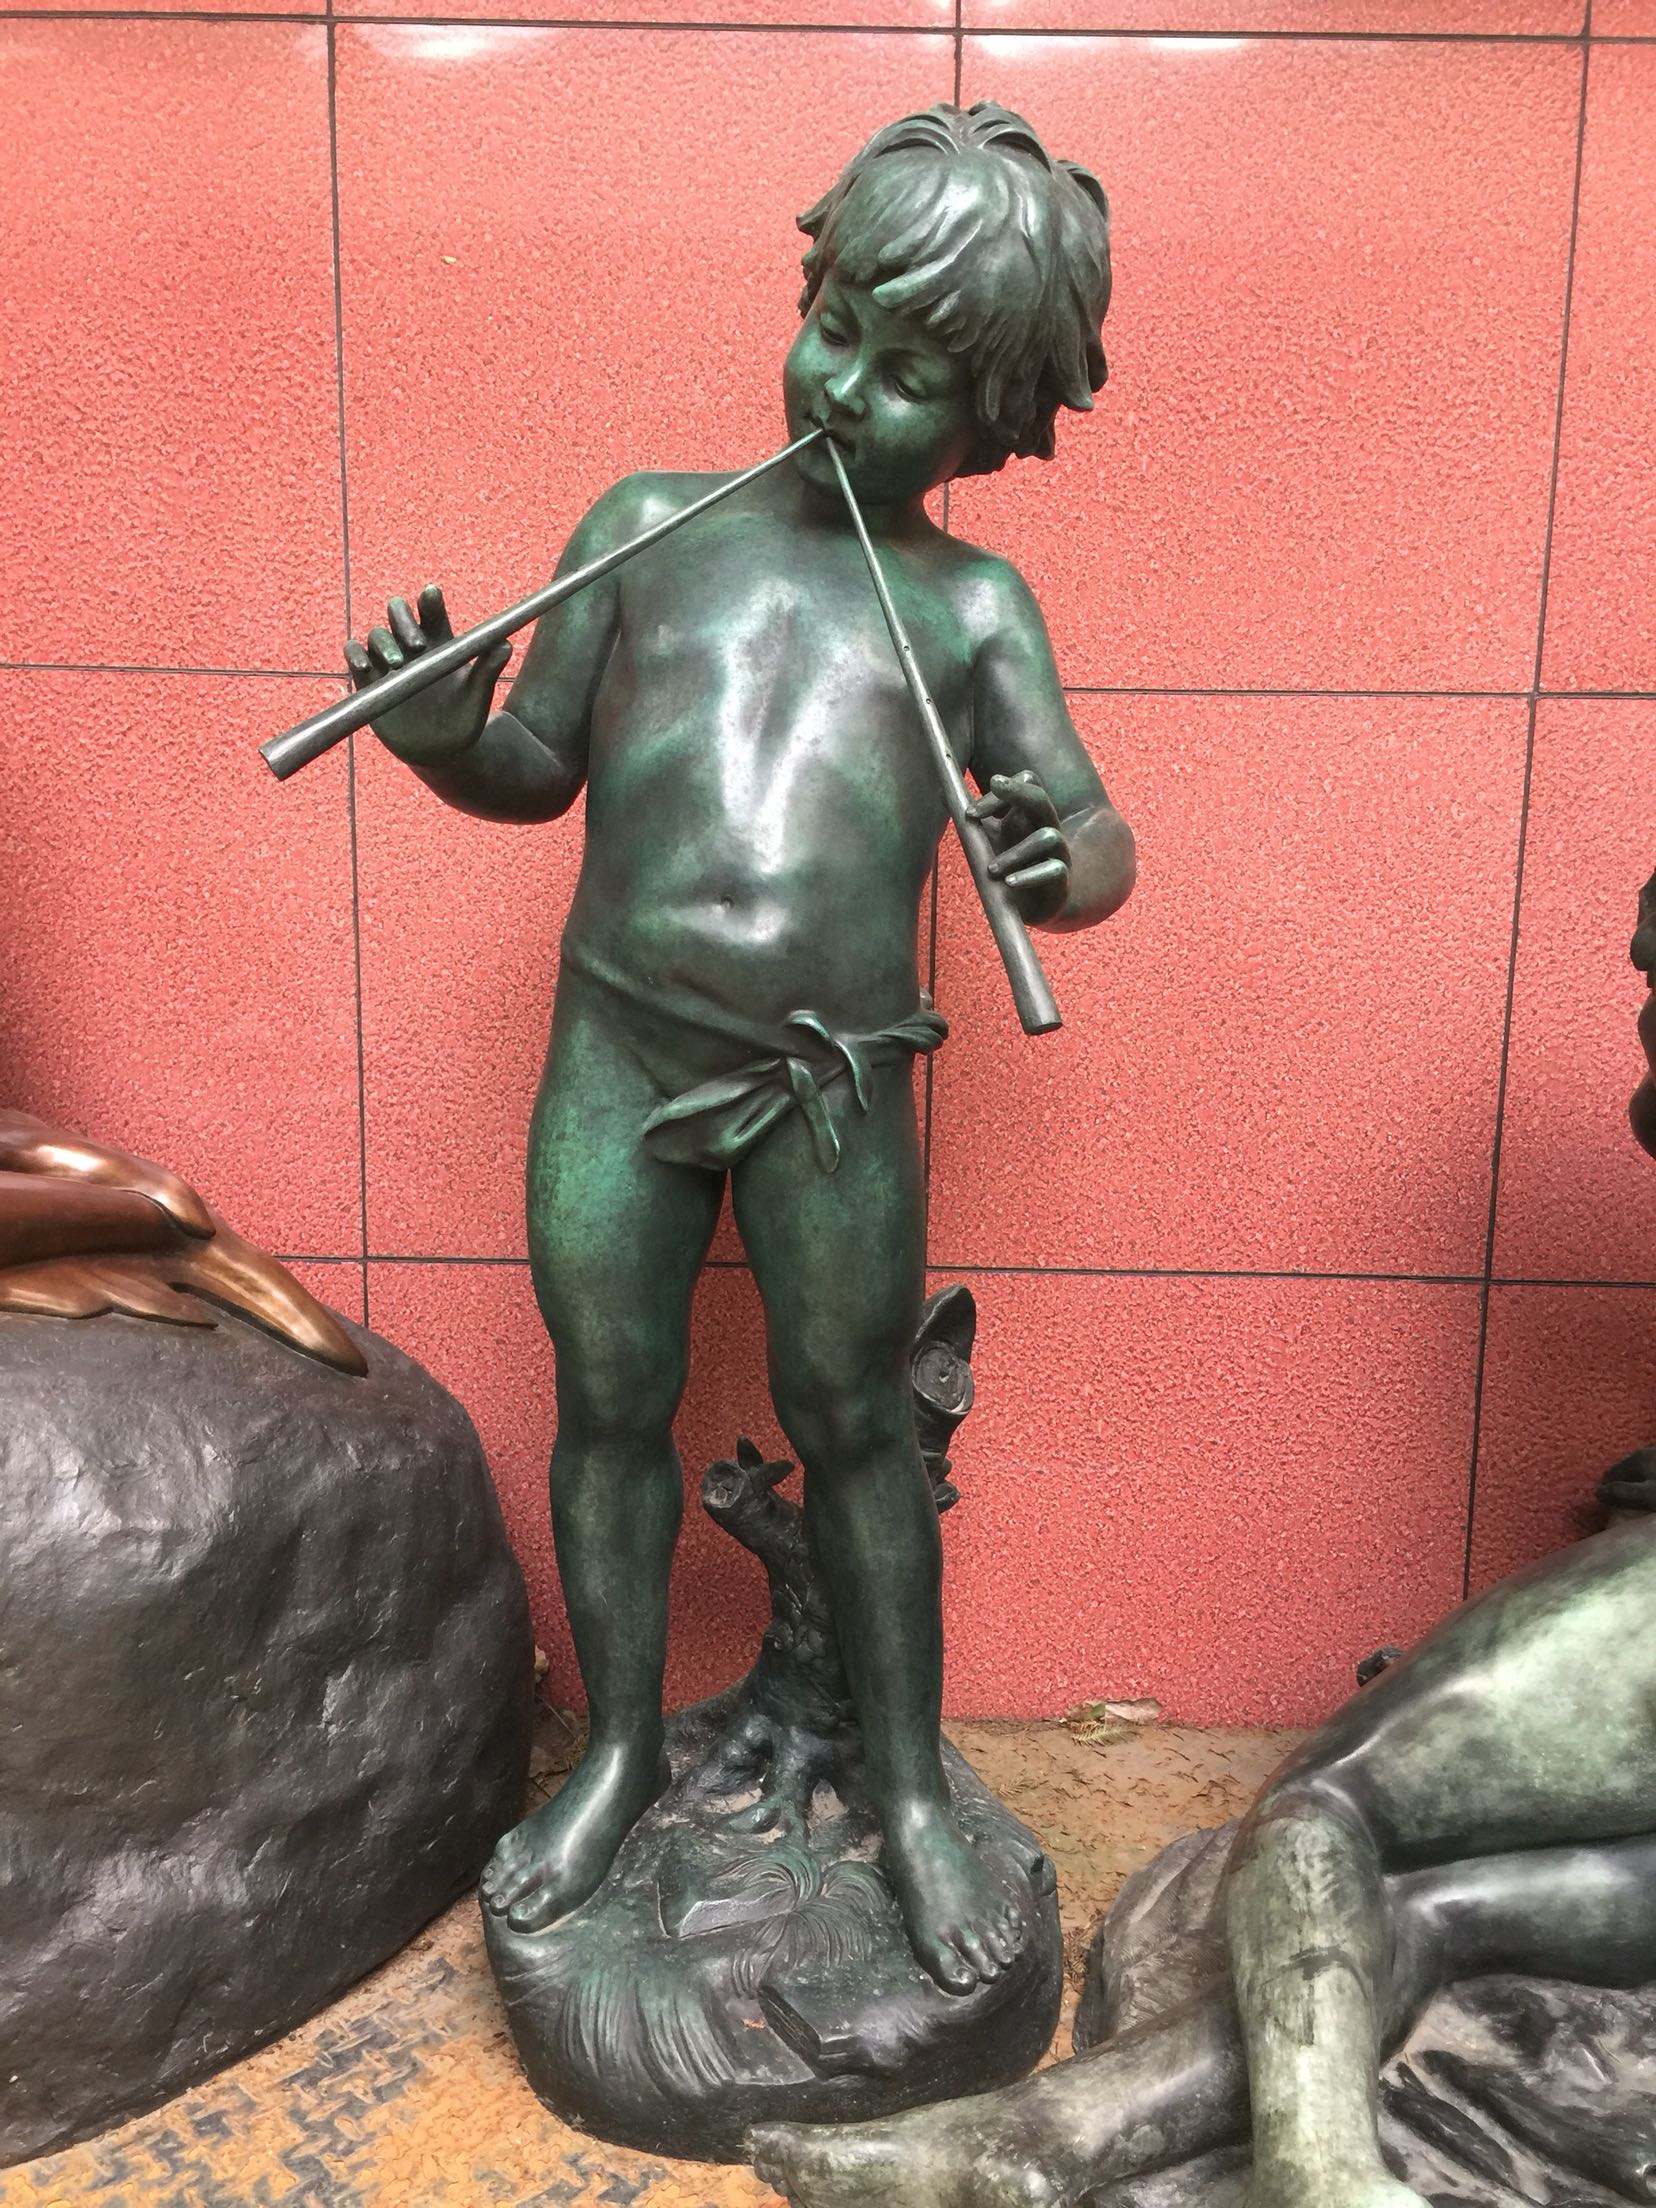 铜雕艺术世界吹笛男孩男童雕塑音乐人物铜像摆件家居饰品创意礼品